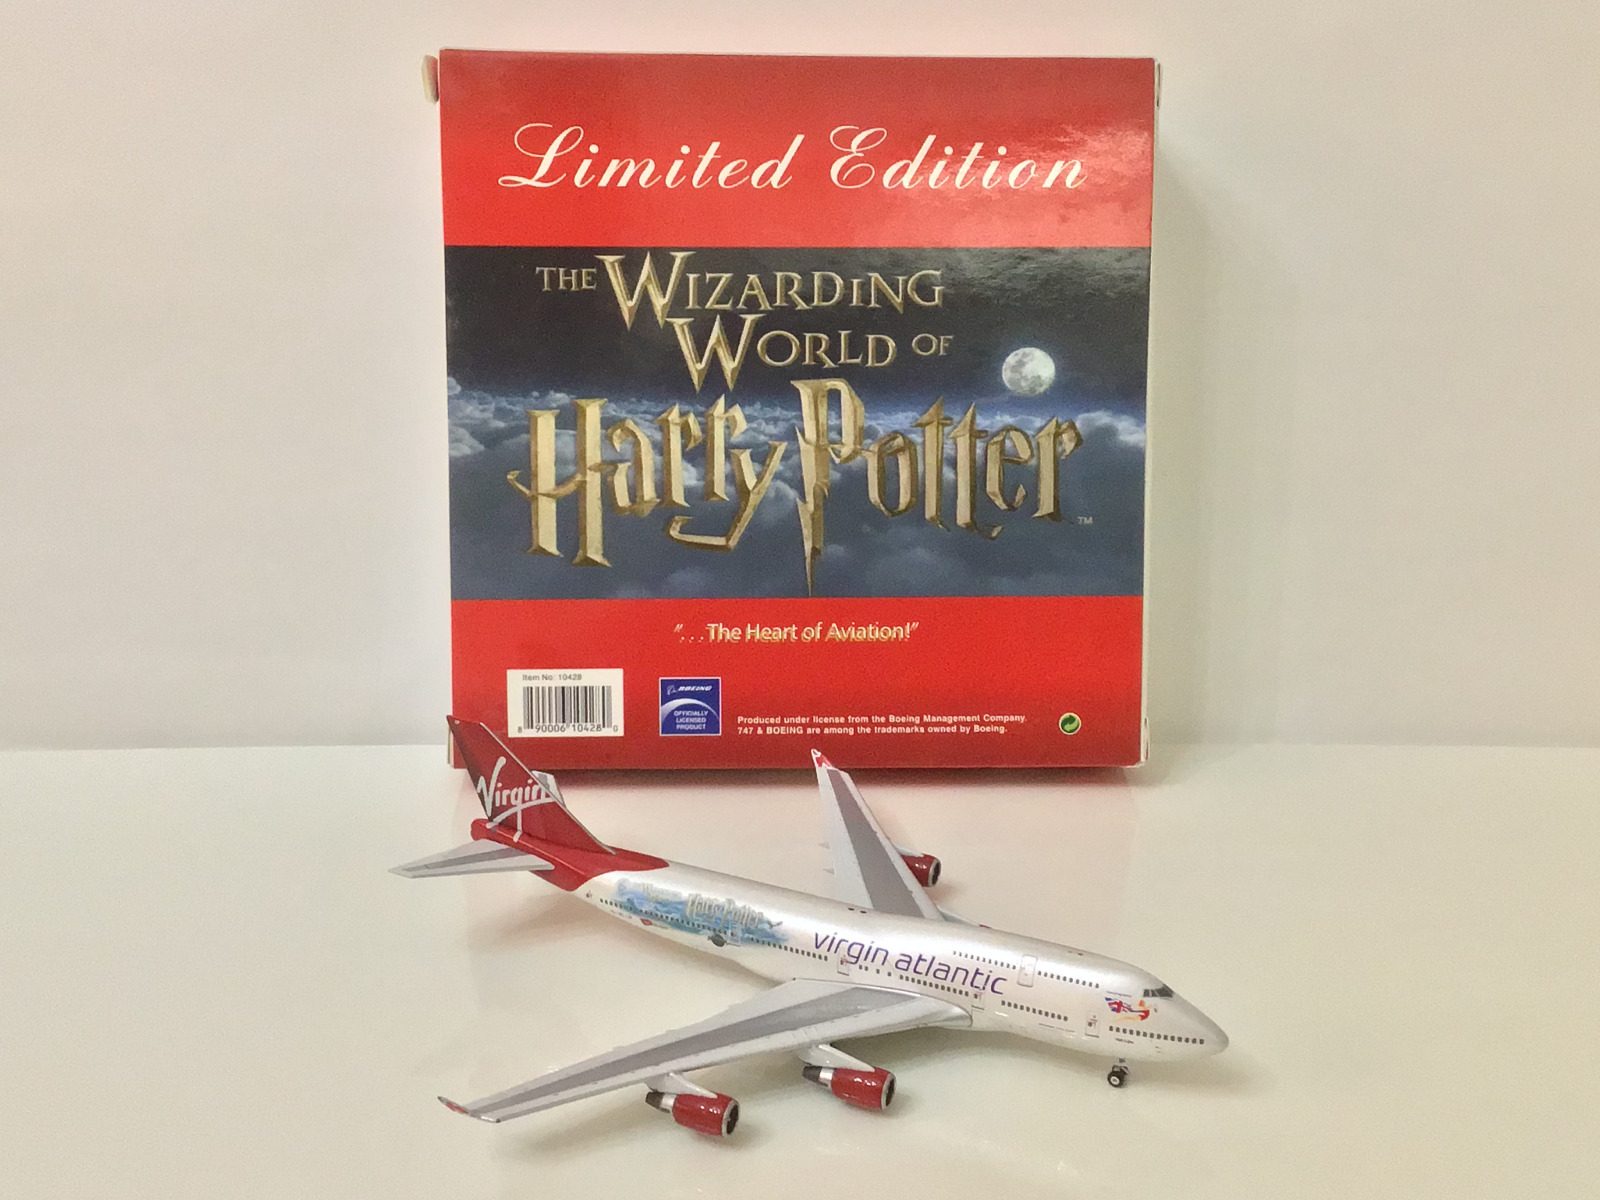 Phoenix 1:400 virgin atlantic Boeing 747-400 The Wizarding World of Harry Potter